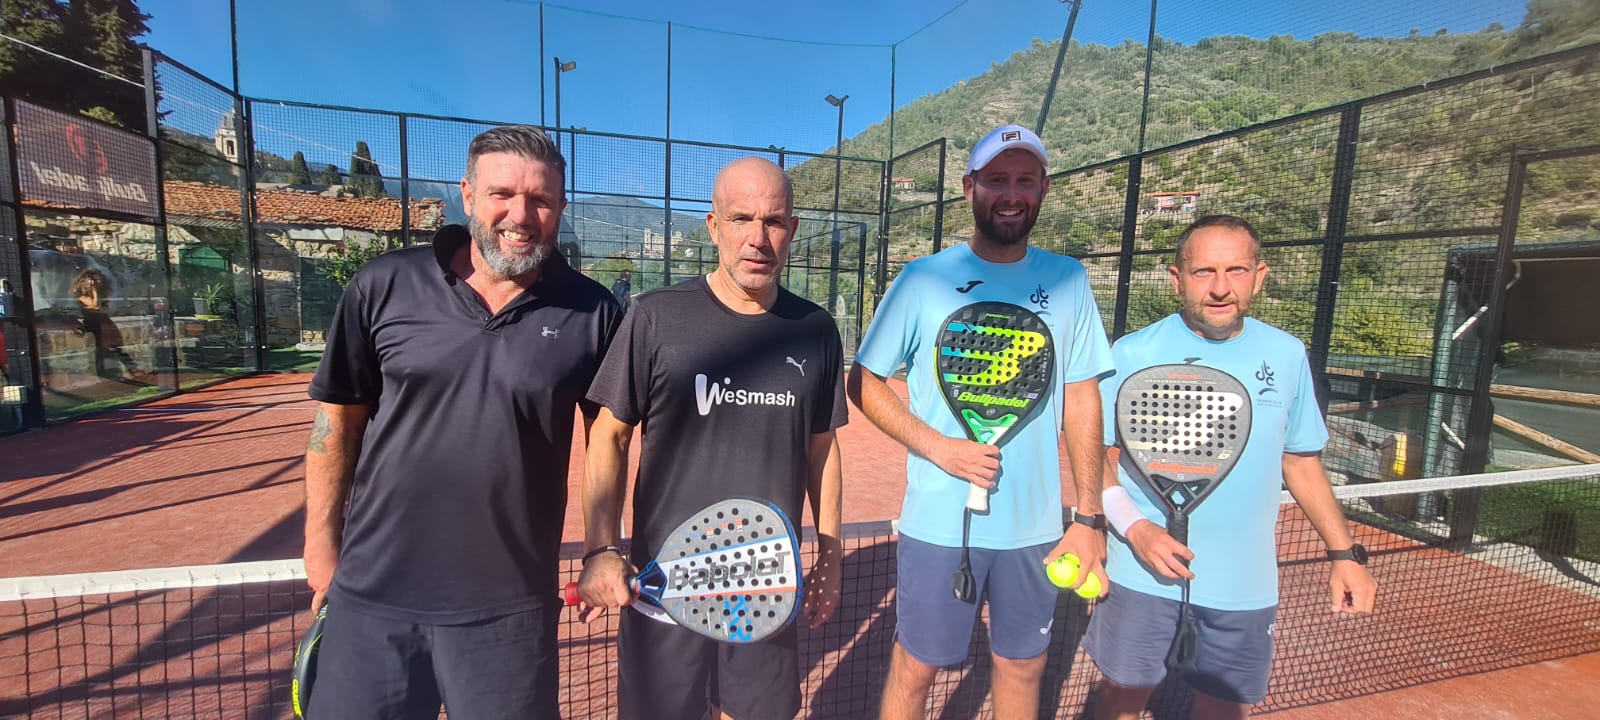 Al Tennis Club Dolceacqua il club dei Vip: il Torneo Open di padel Prima la Riviera